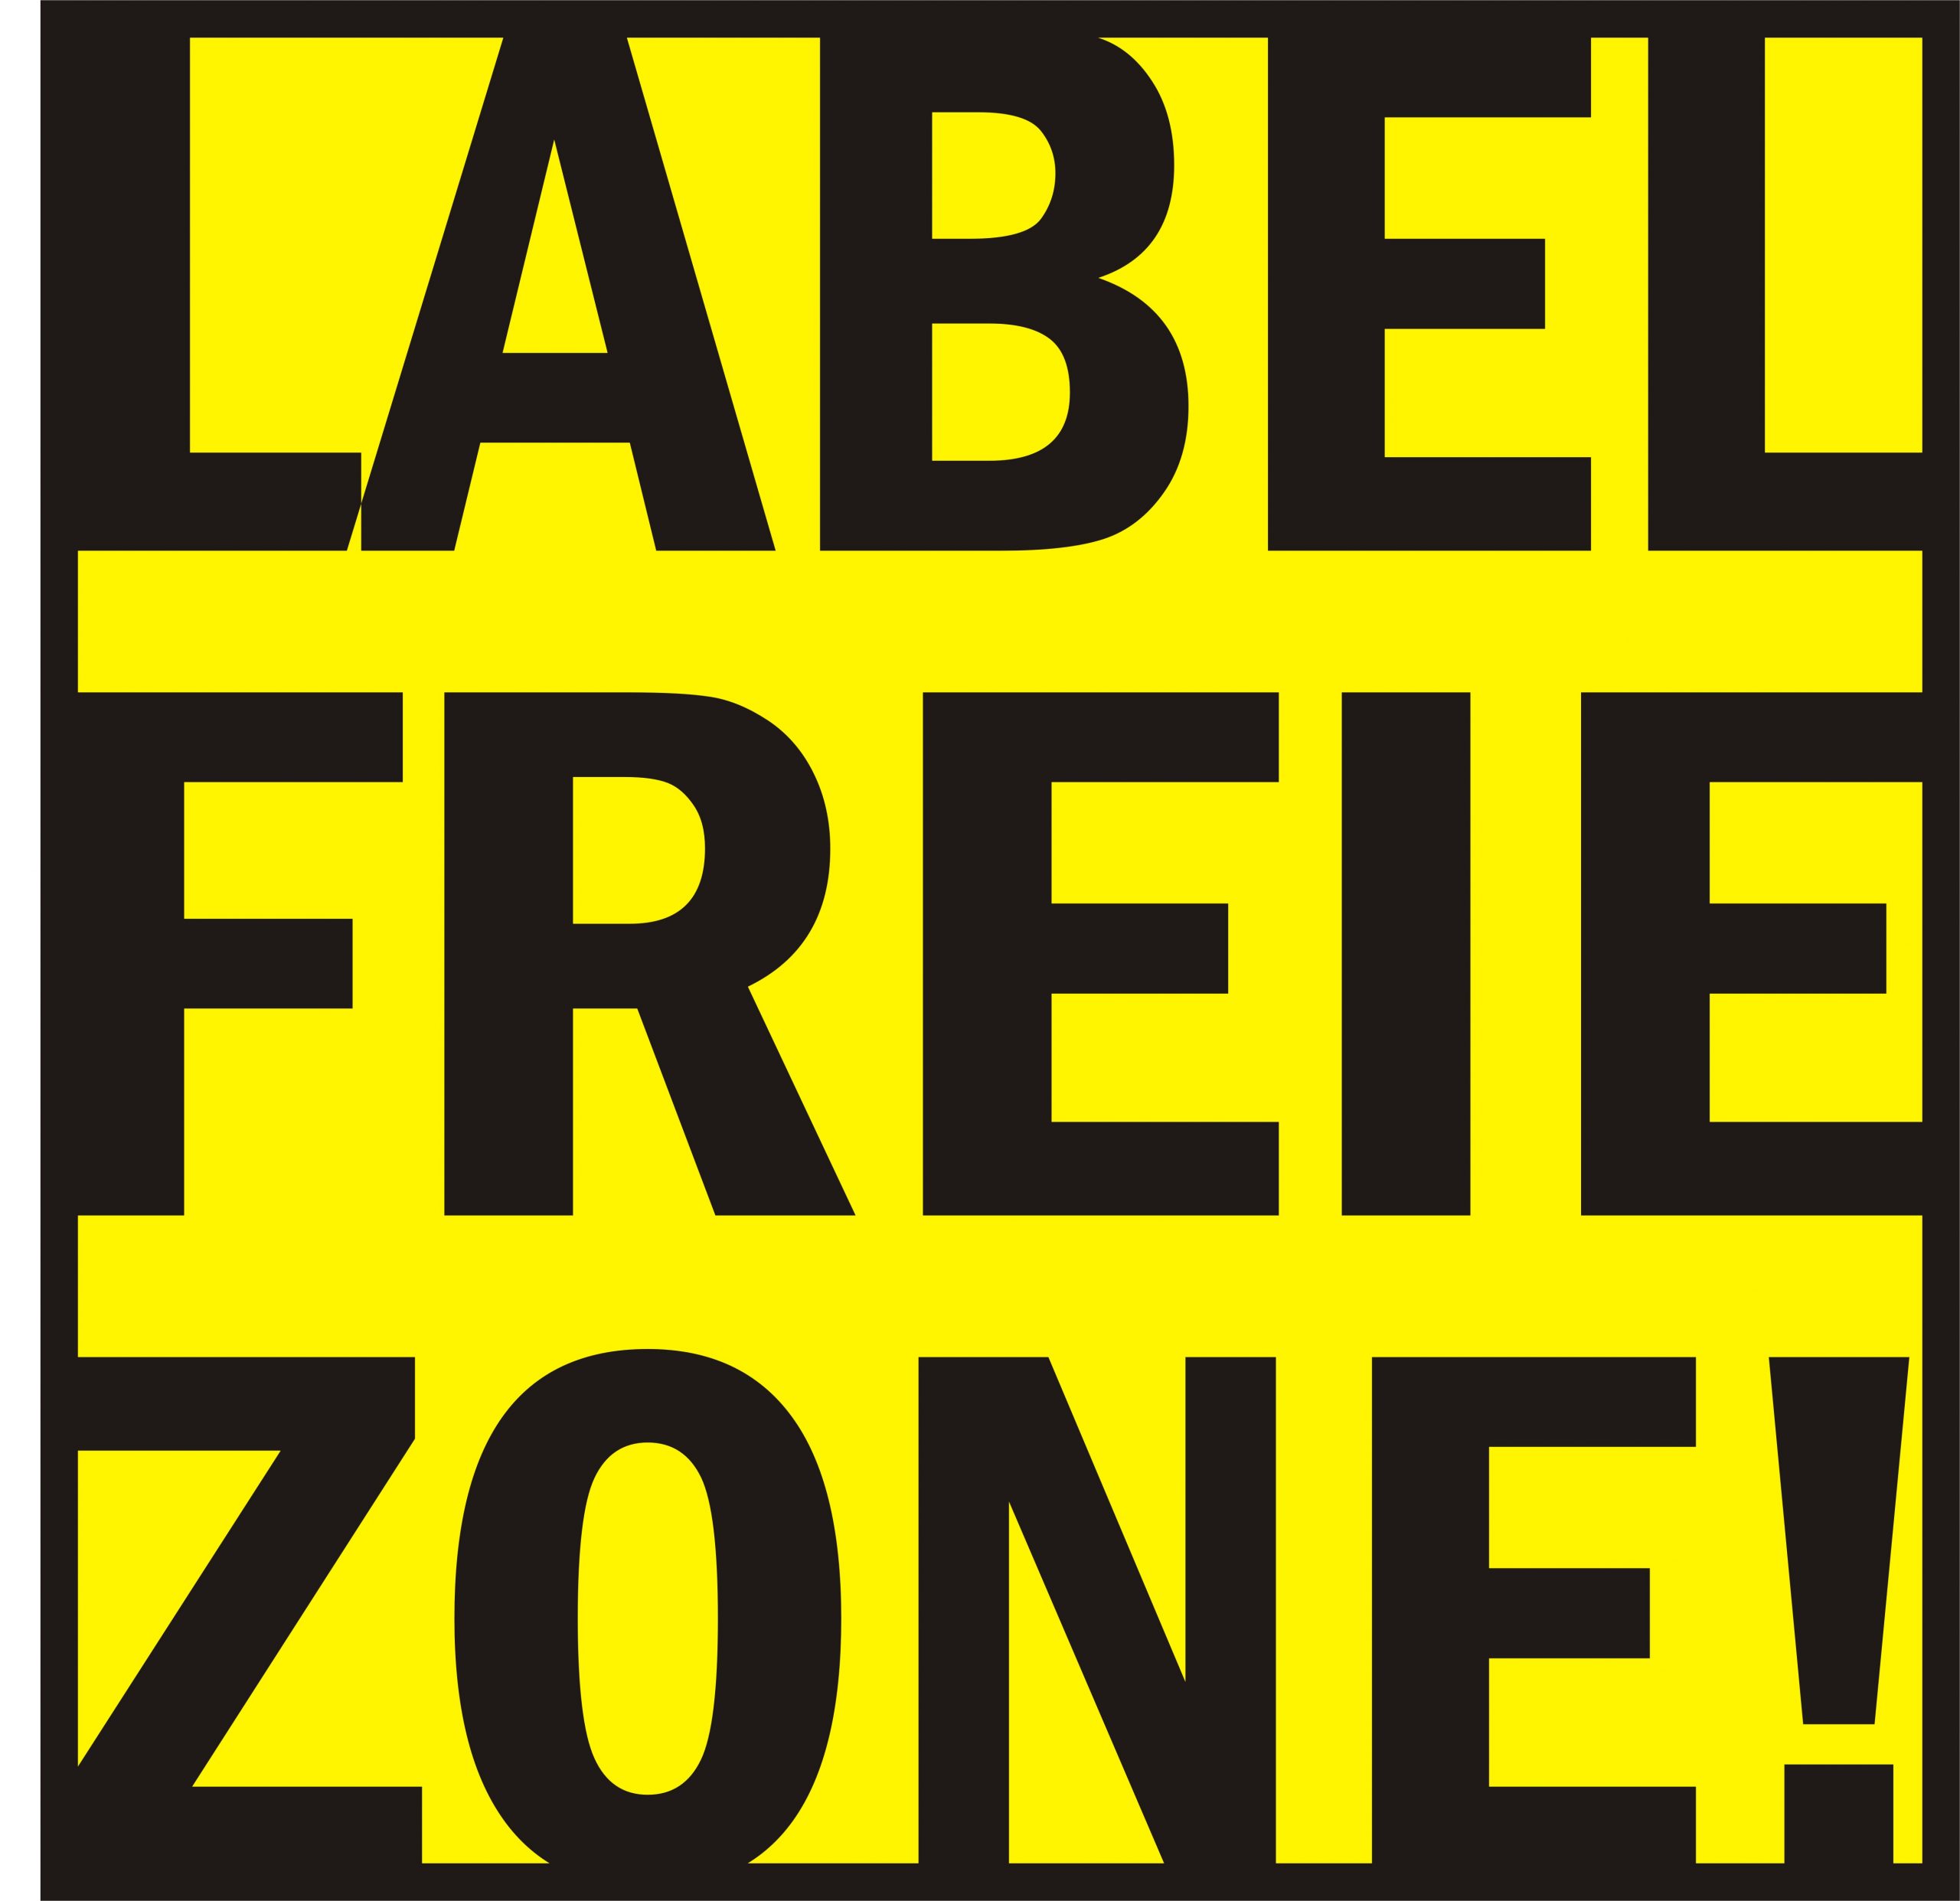 Labelfreie Zone logo gelb.